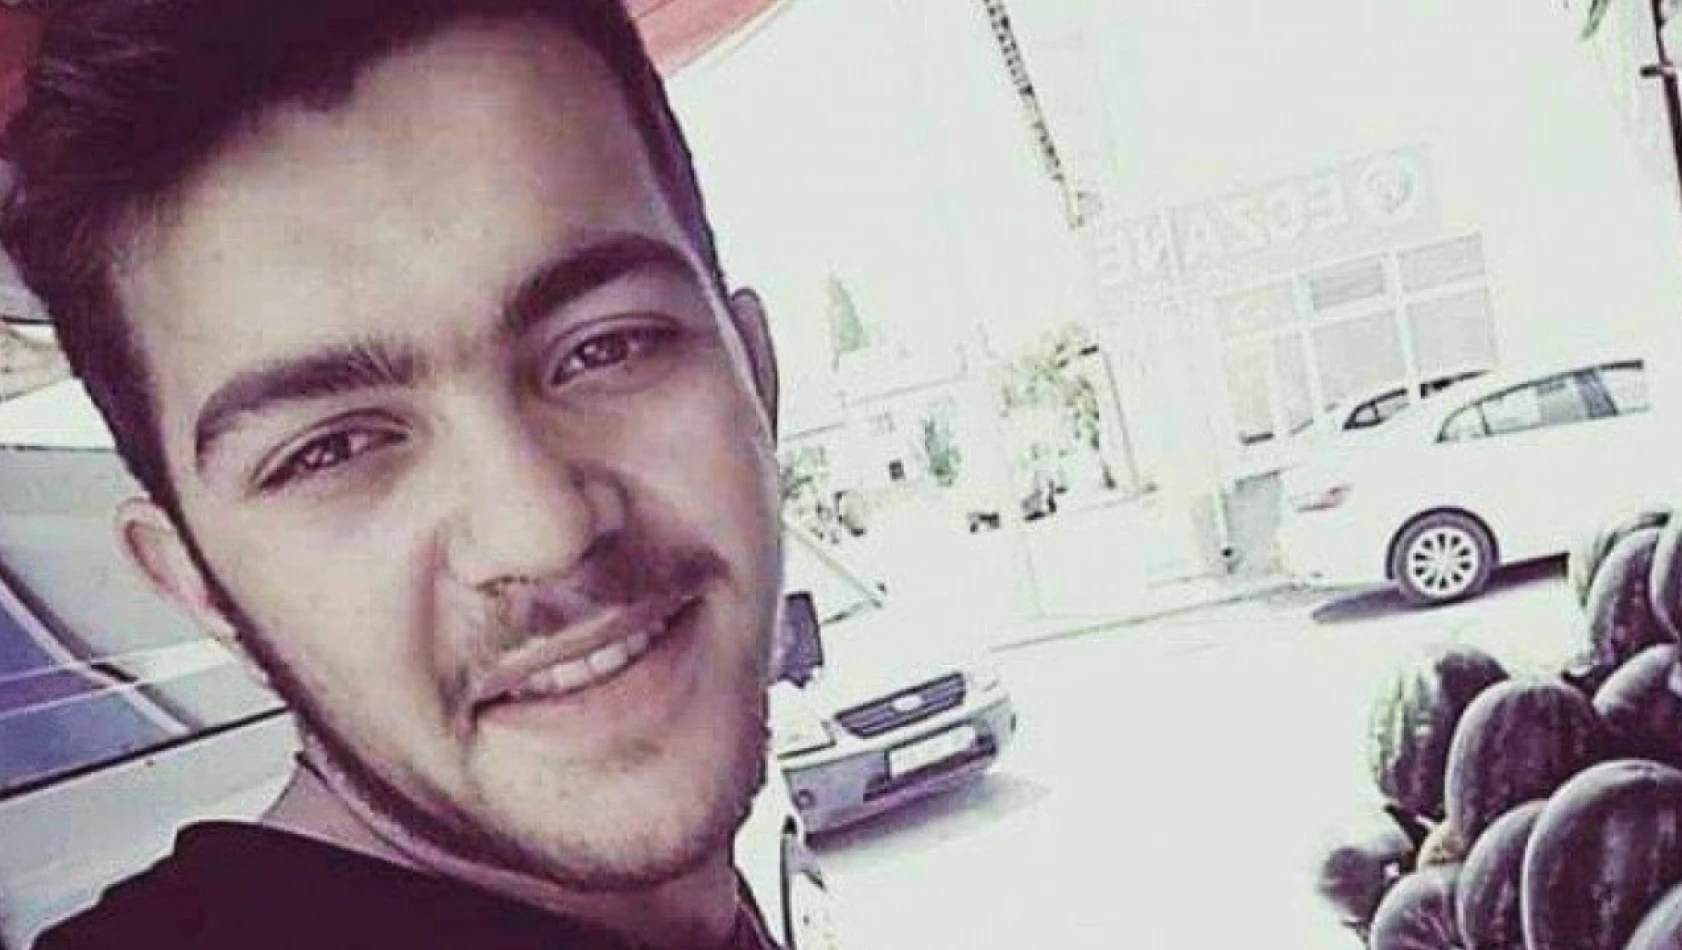 Kayseri'de öldürülen gencin duruşması devam ediyor